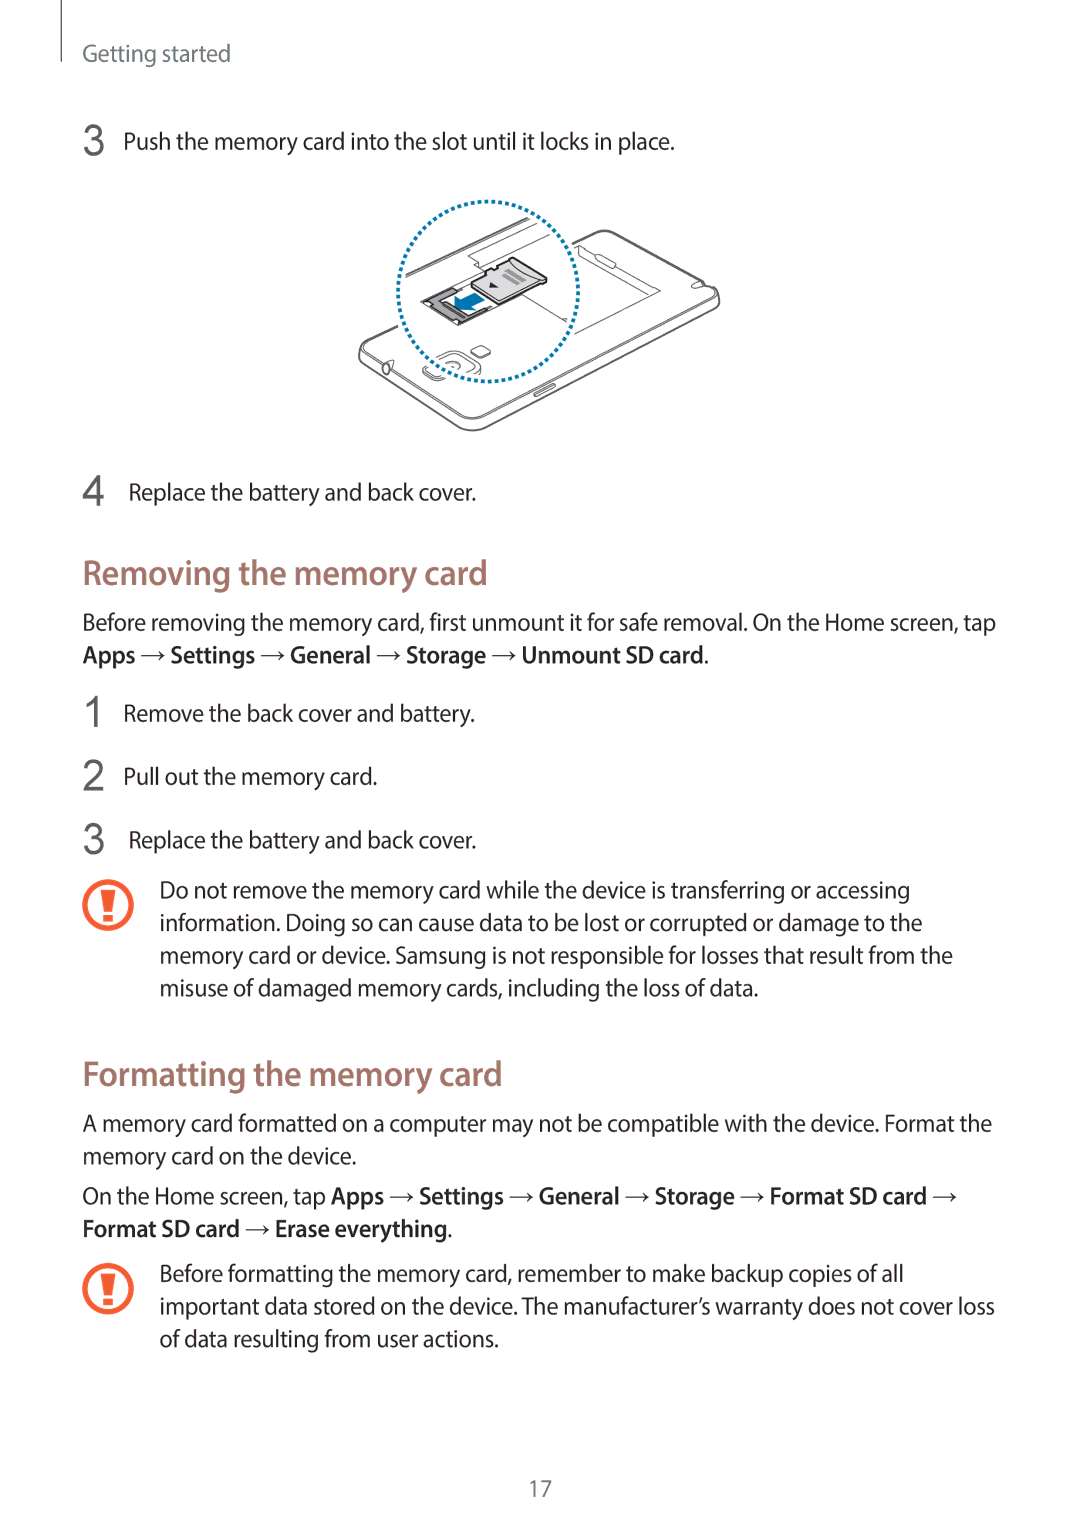 Samsung SM-N7500ZWASER, SM-N7500ZKACAC, SM-N7500ZKAKSA, SM-N7500ZWAAFR Removing the memory card, Formatting the memory card 